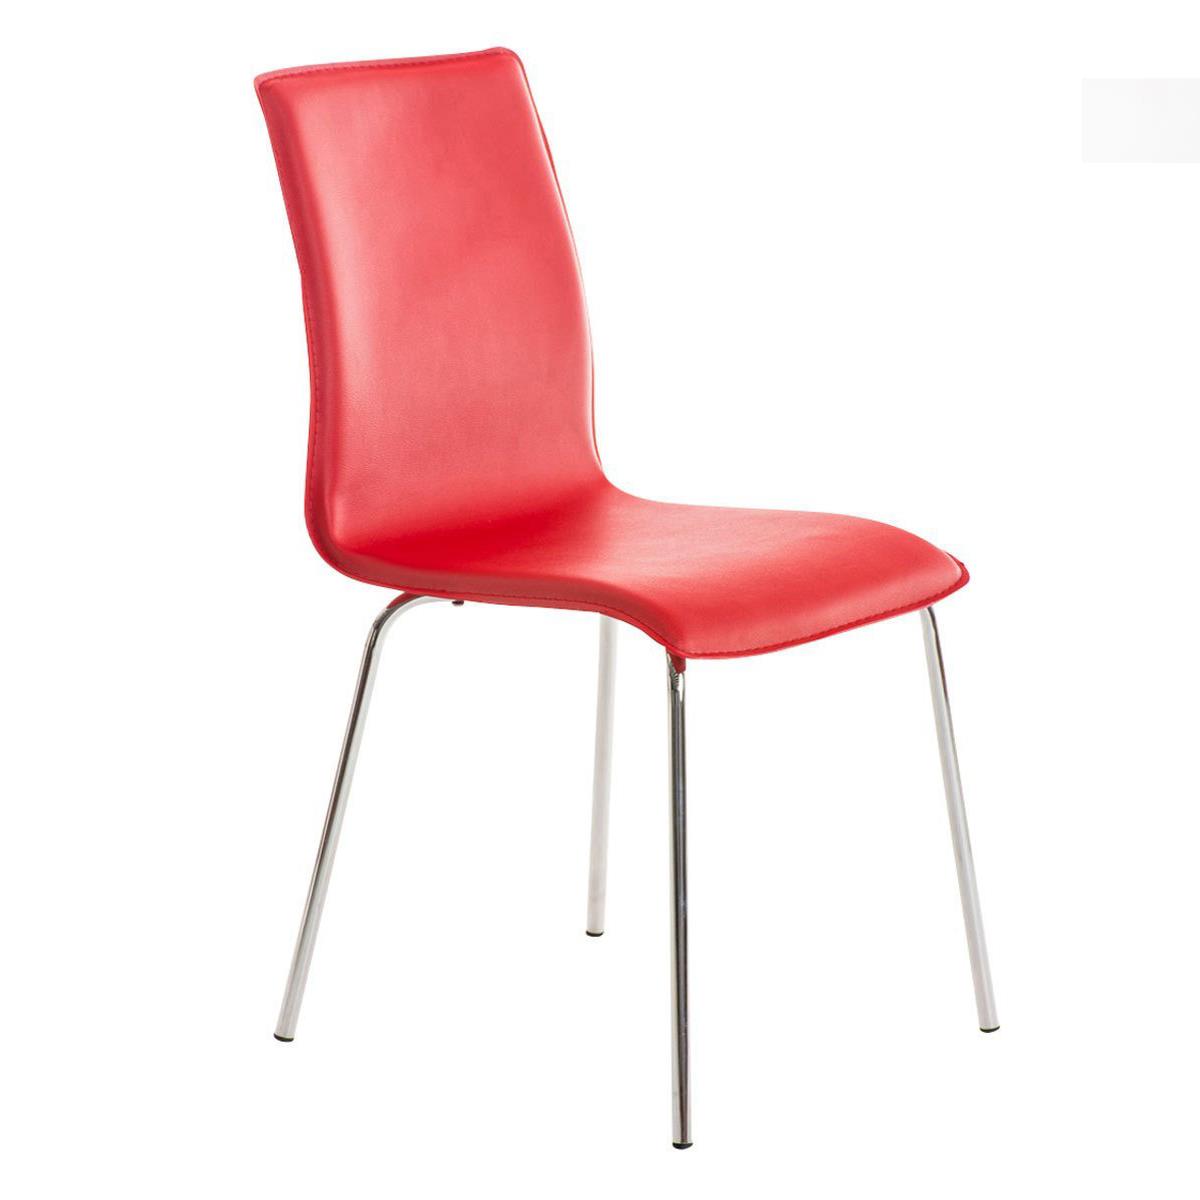 Cadeira de Visita MIKI, Design Exclusivo, Forrada Em Pele, Cor Vermelho